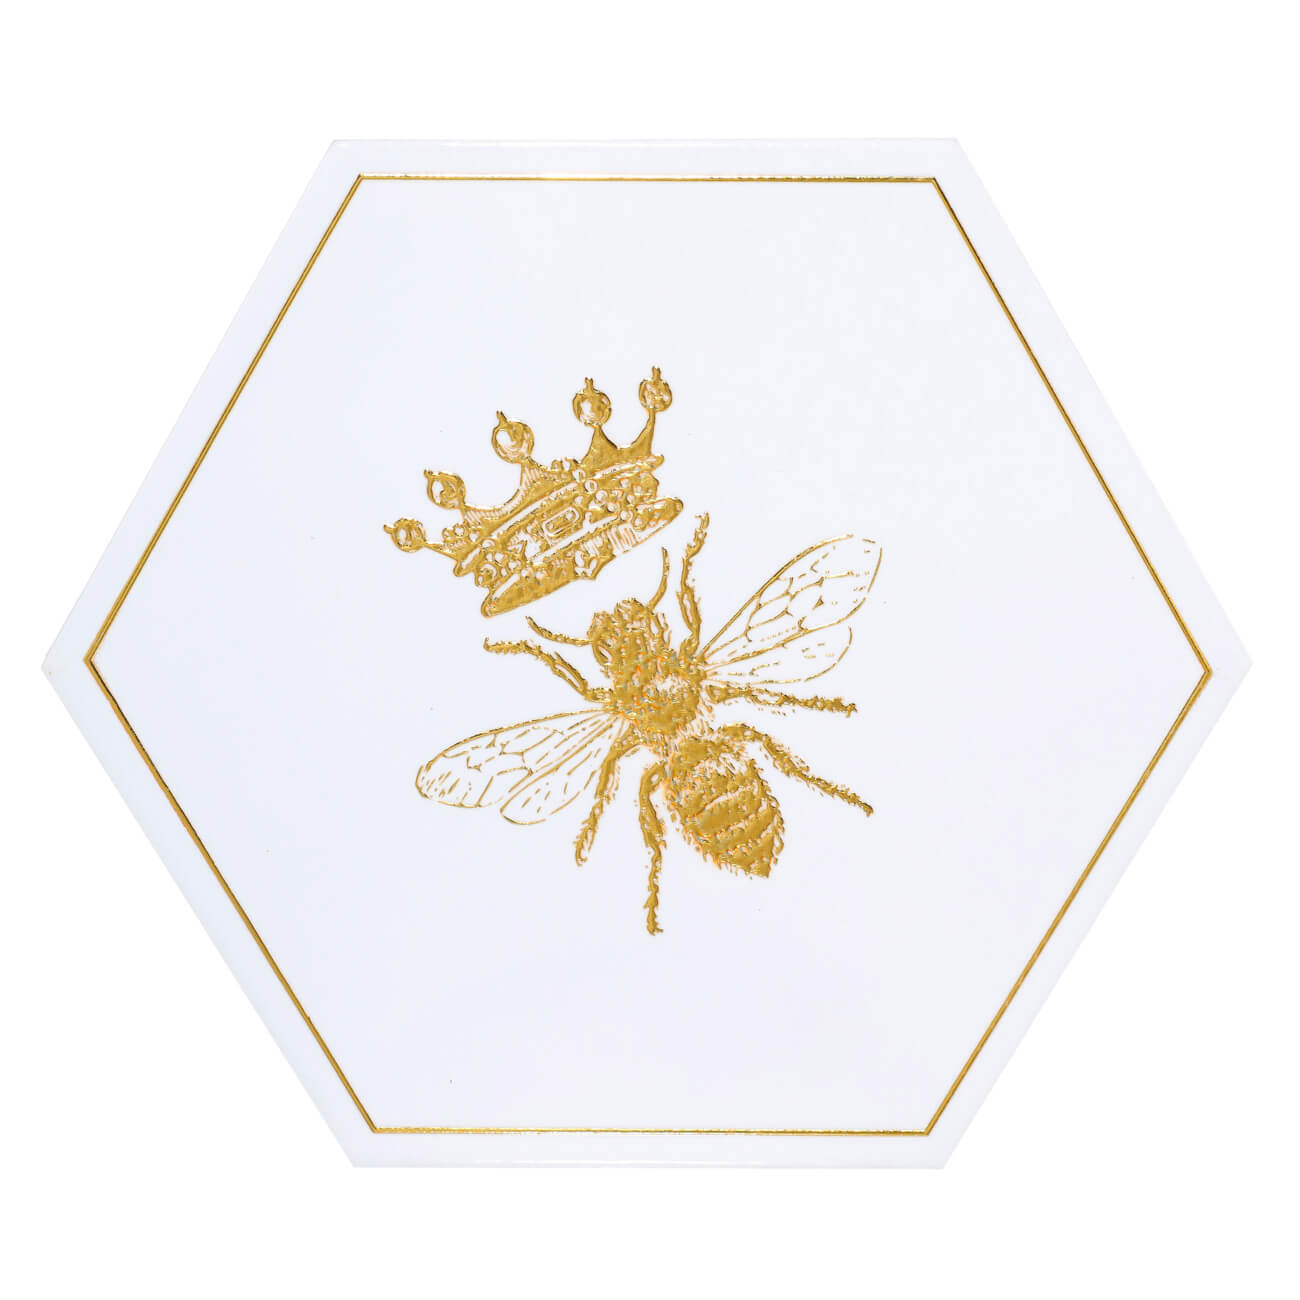 Подставка под горячее, 20 см, керамика/пробка, шестиугольная, белая, Королевская пчела, Honey царь соломон и пчела